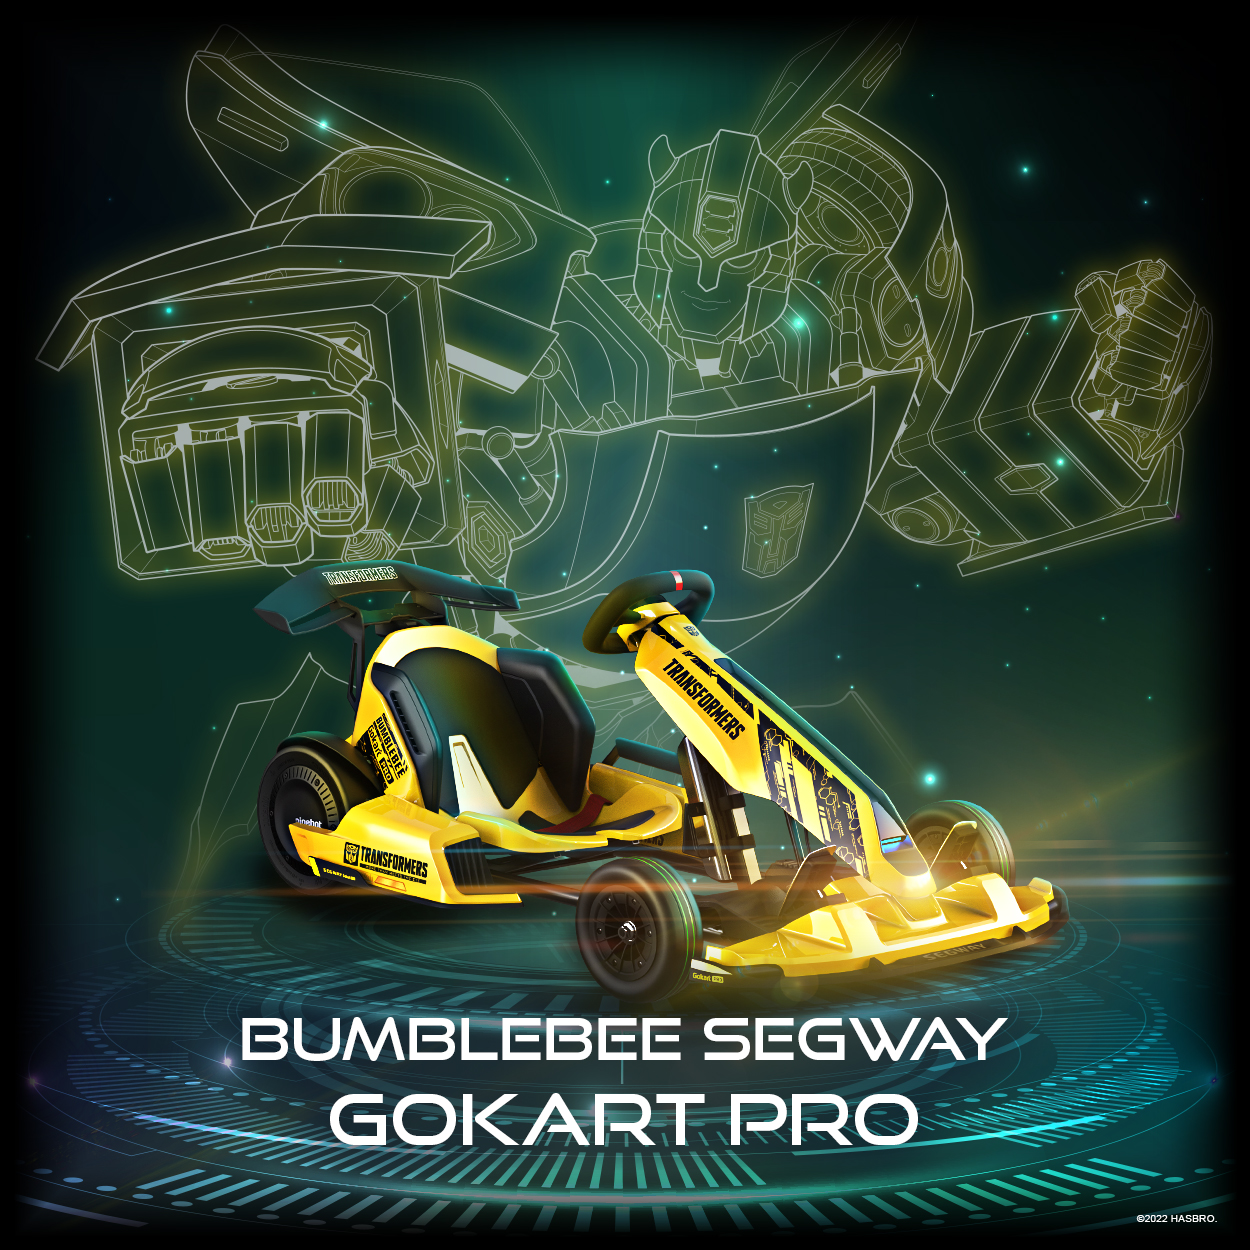 Bumblebee Segway Gokart Pro